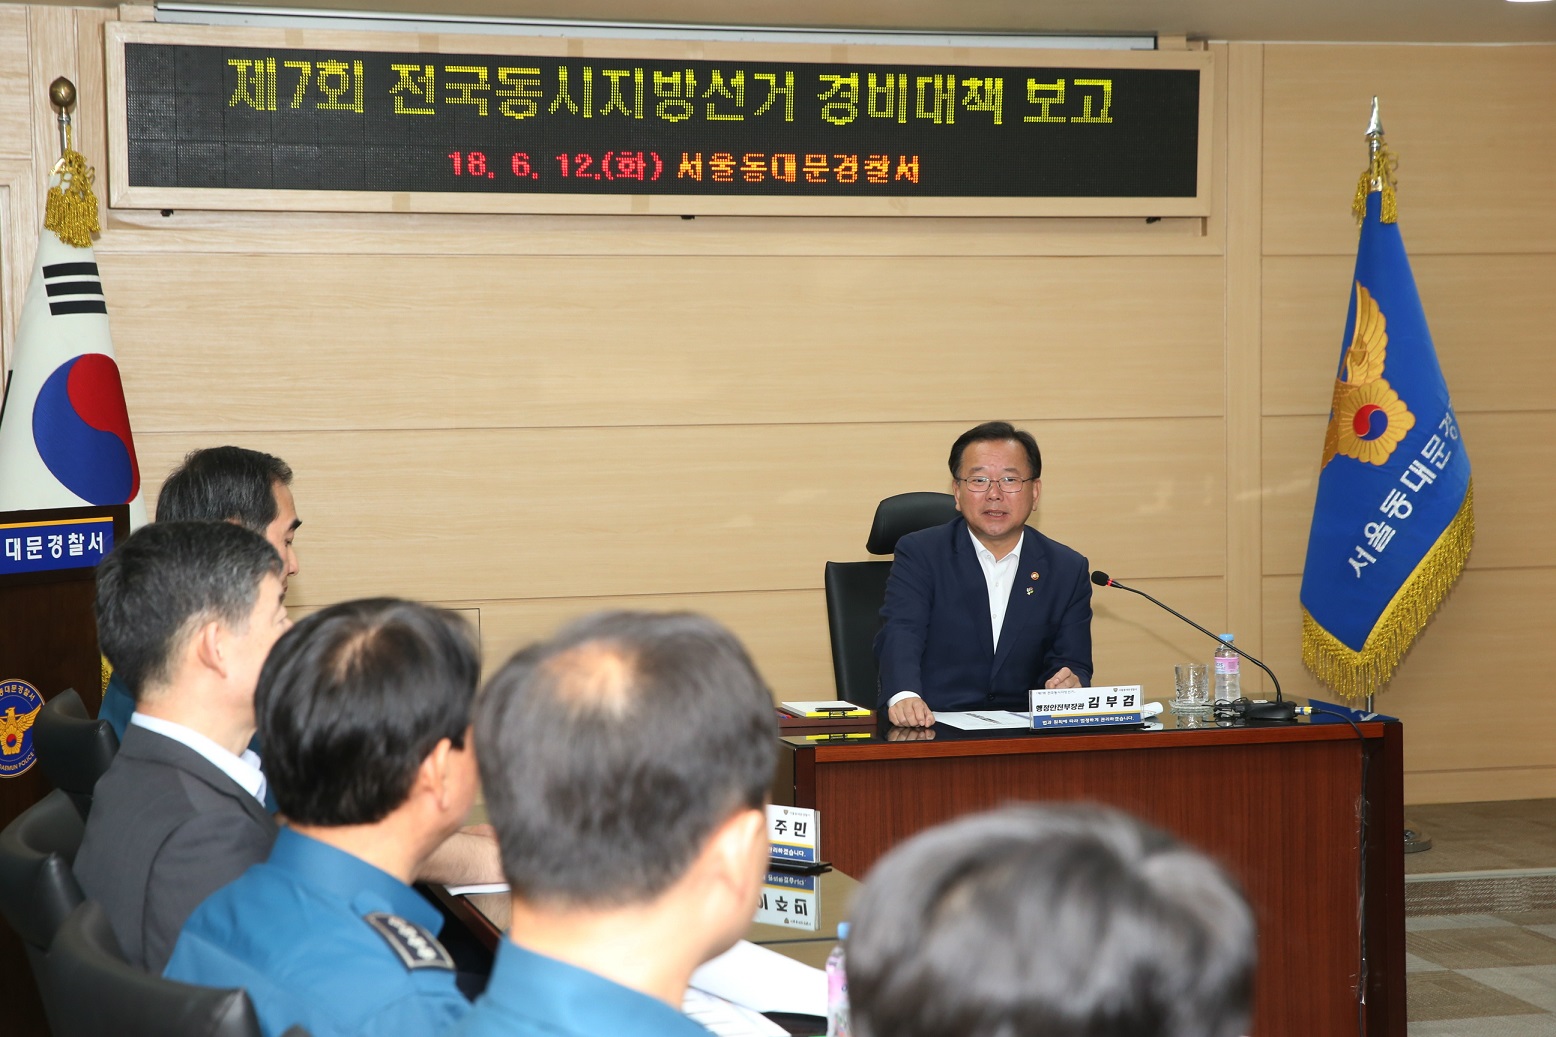 '제 7회 전국동시지방선거'를 하루 앞둔 12일 오후 서울동대문경찰서를 방문한 김부겸 장관이 투·개표소 경비대책을 보고받고 있다.